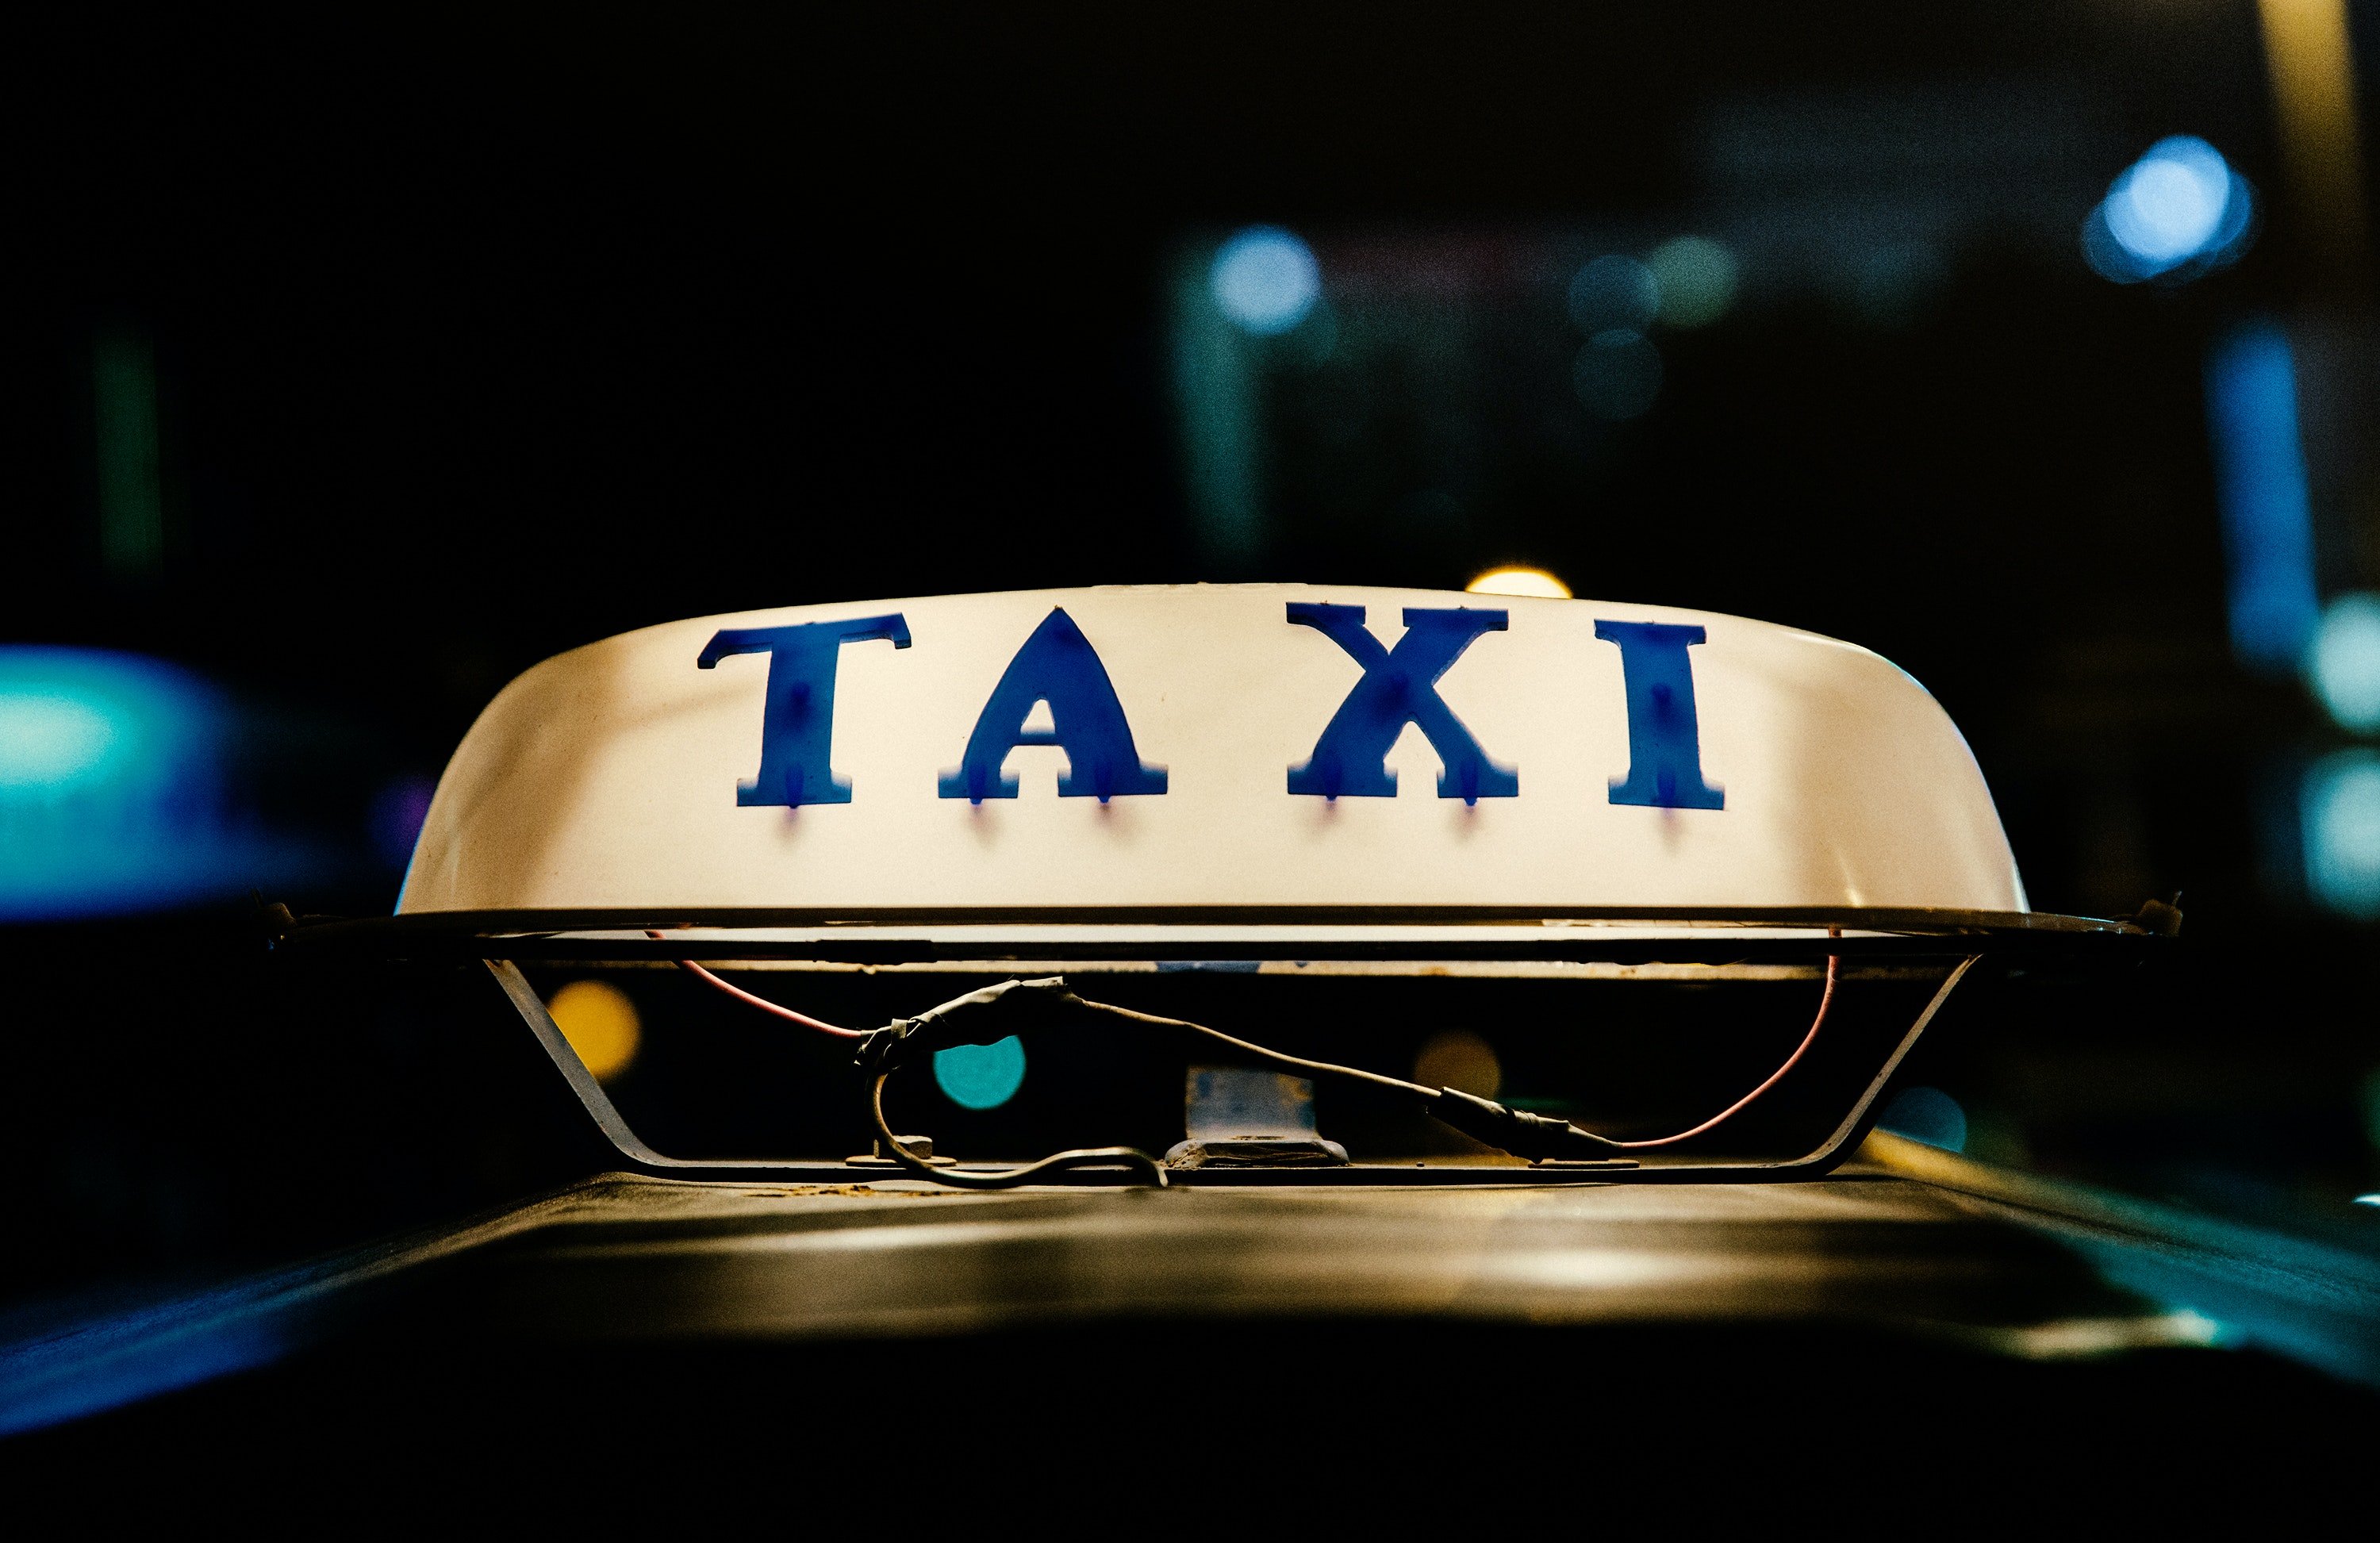 Der Mann nahm ein Taxi und fuhr schließlich davon. | Quelle: Pexel